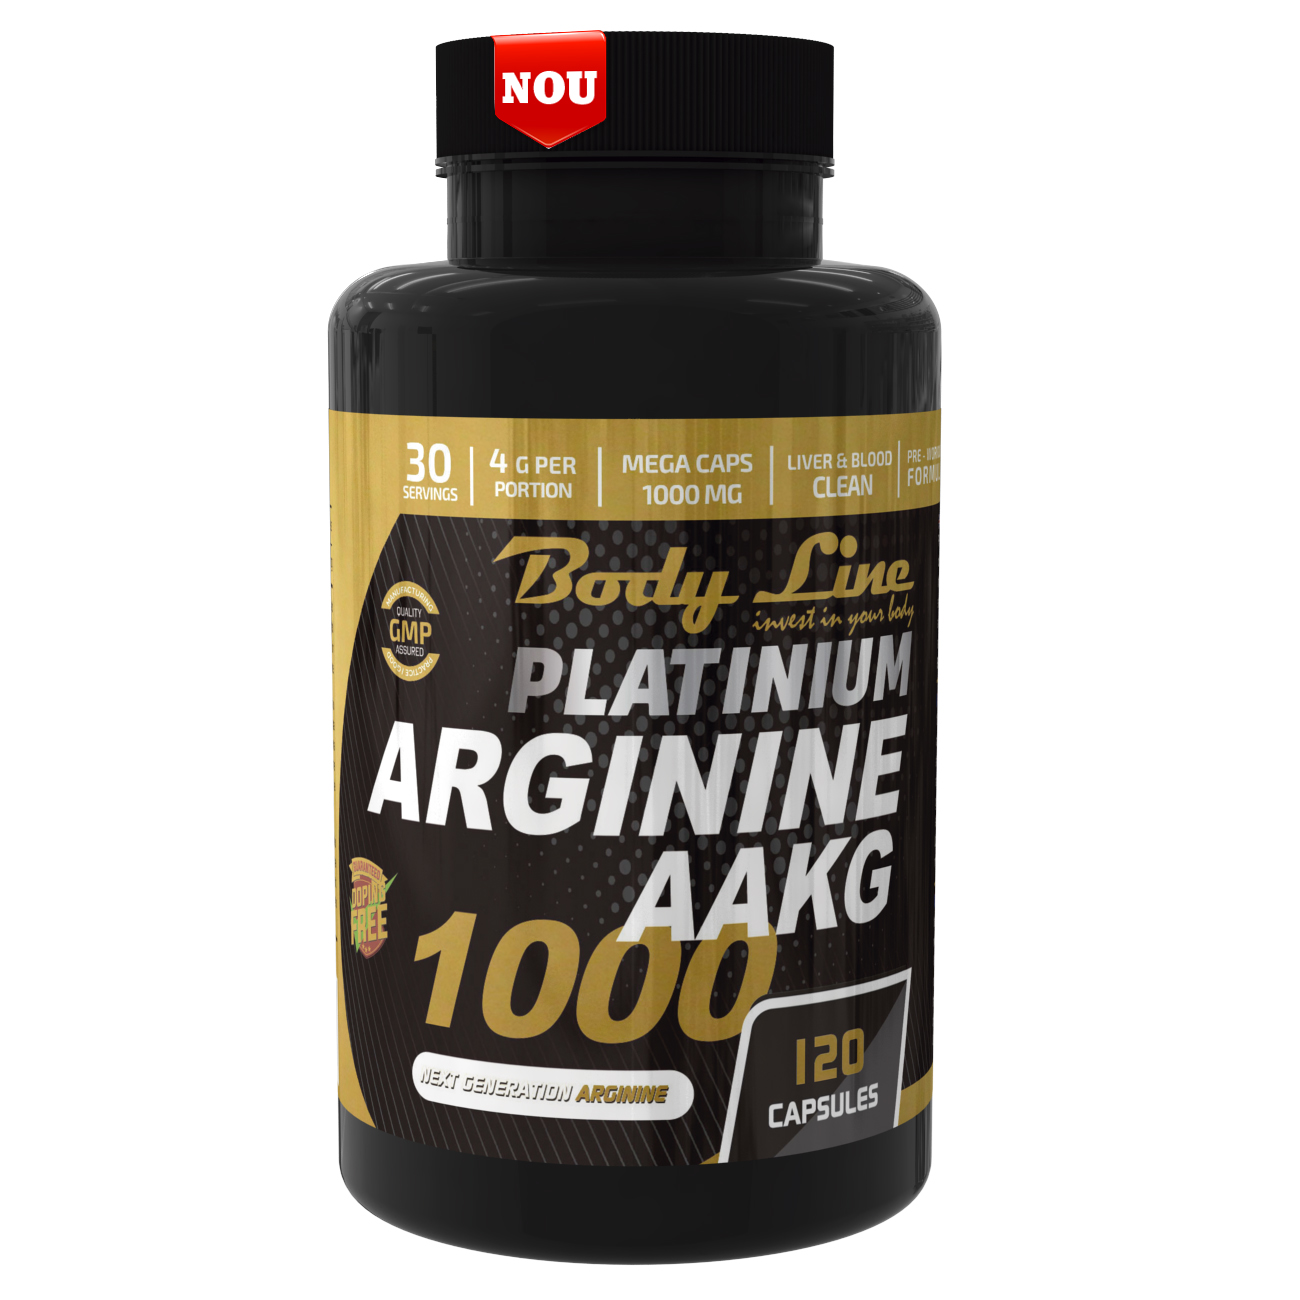 PLATINIUM ARGININE AAKG 1000